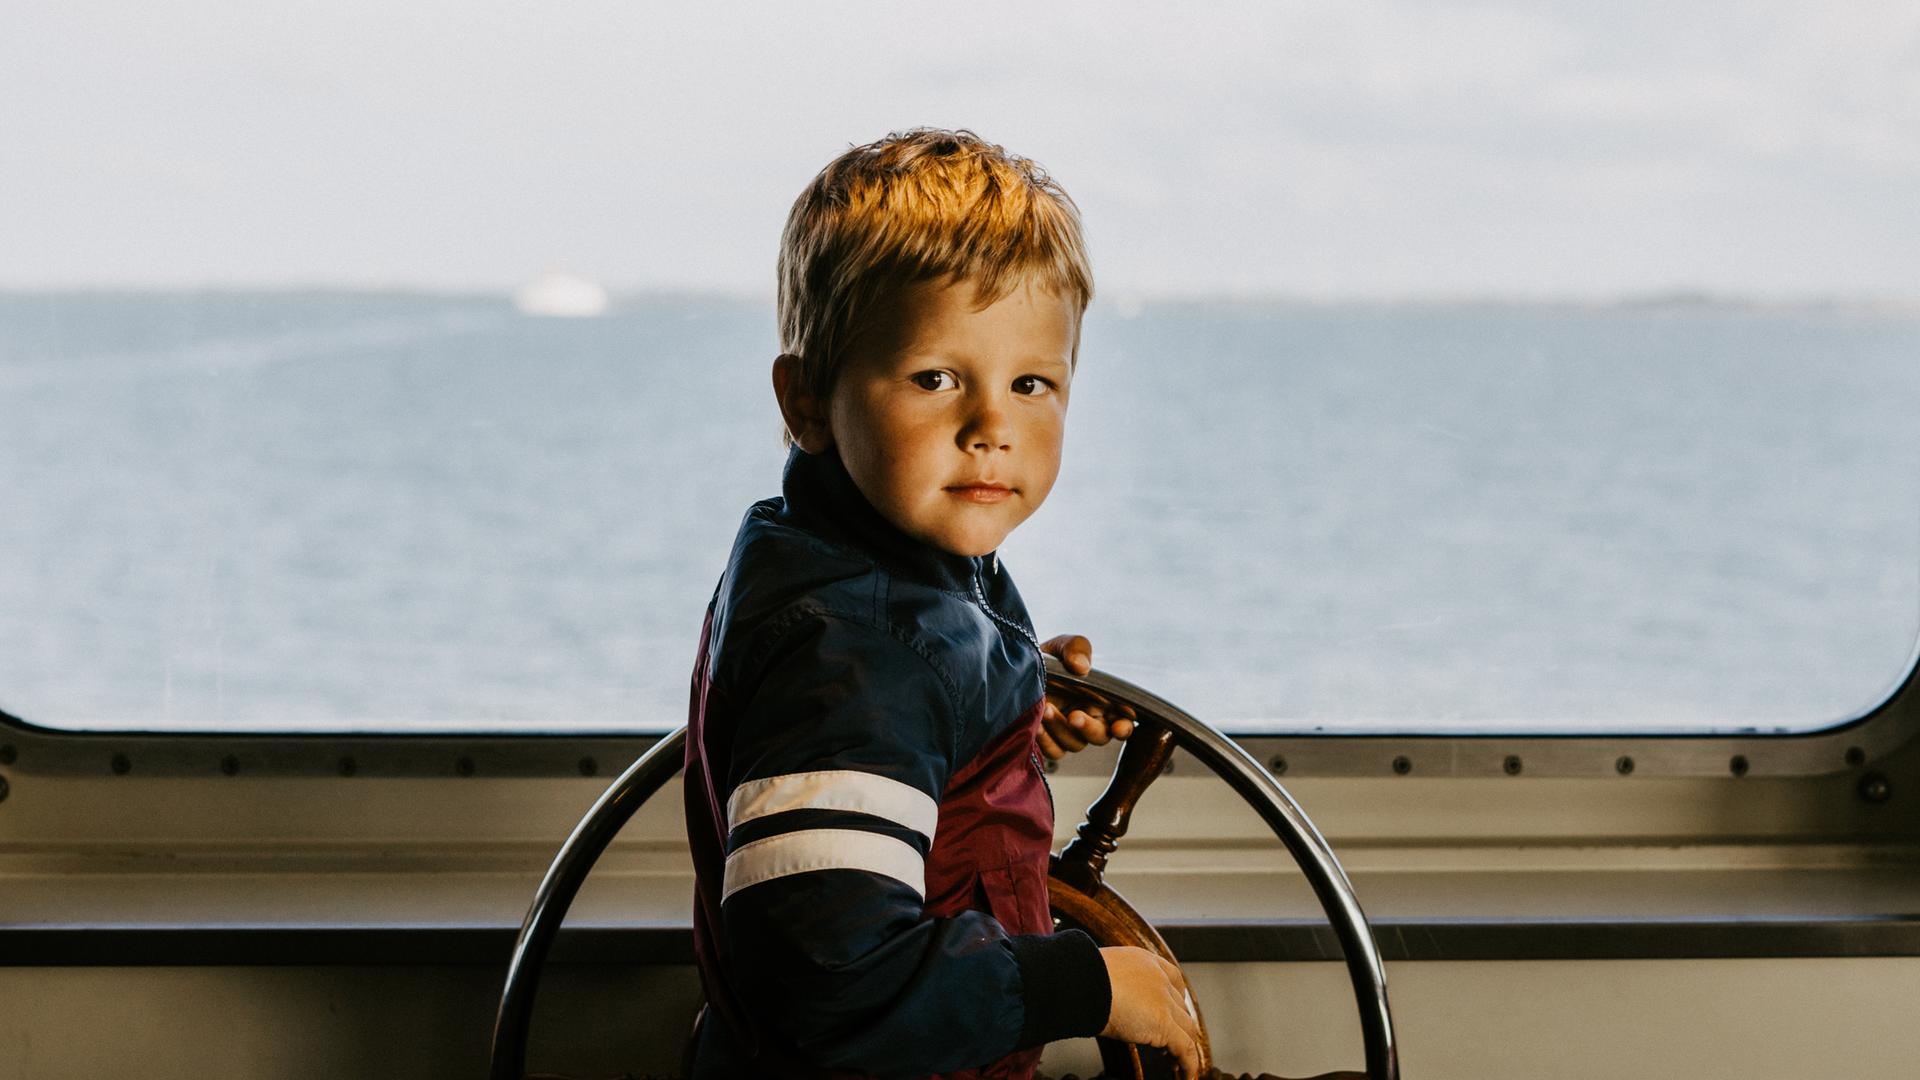 Ein Junge am Steuerrad eines Schiffs. Durch die Scheibe sieht man den Horizont und das Meer.